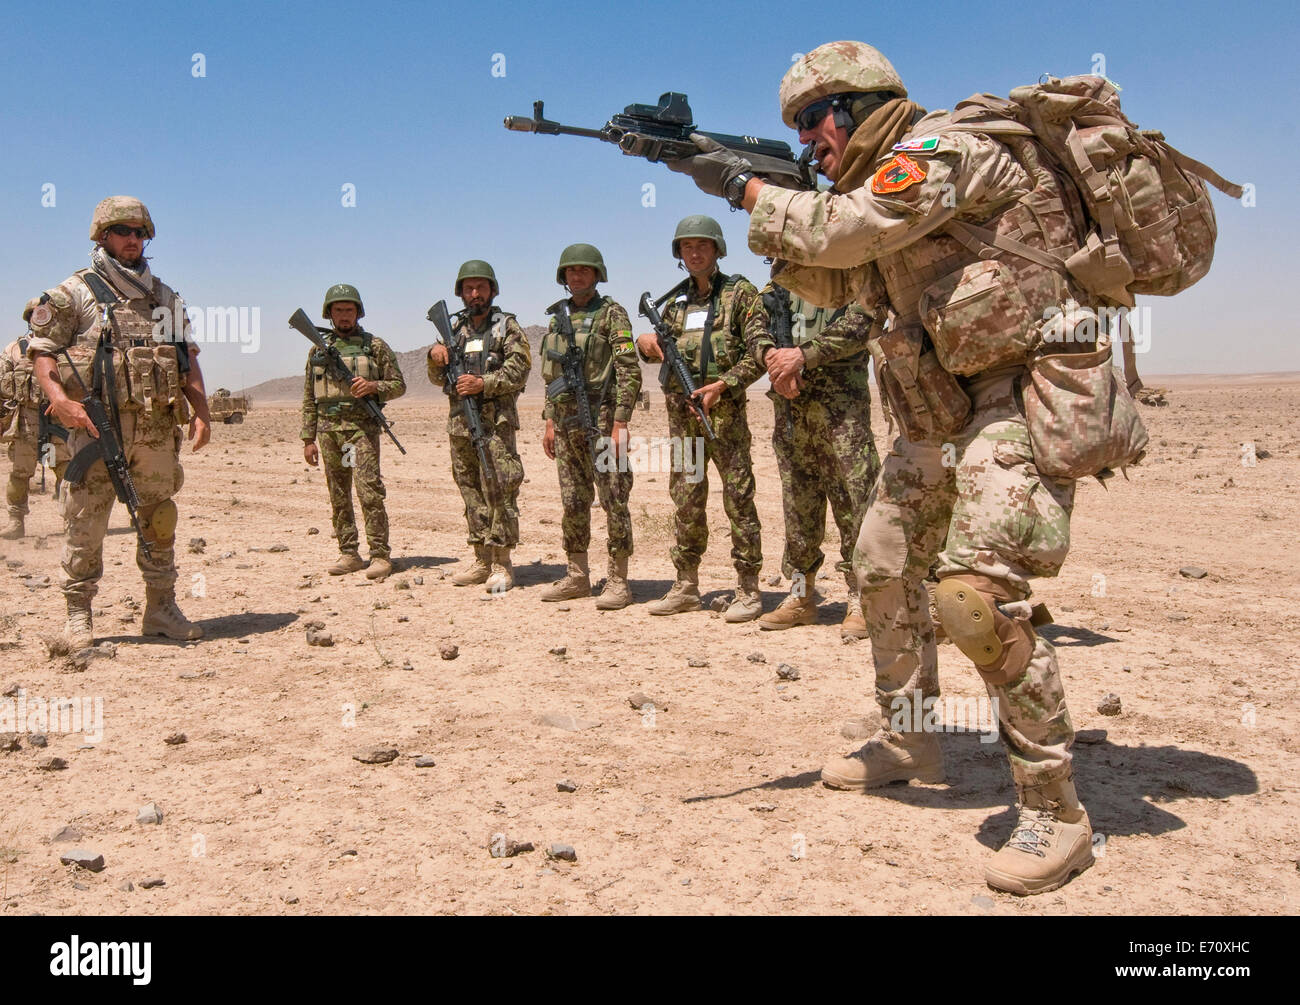 Eine slowakische Armee Lehrer lehrt Afghan National Army Soldaten mit der 4. Kandak, 2. Mobile Strike Force Brigade M4 Karabiner Gewehre feuern während des Trainings 21. August 2014 in der Provinz Kandahar, Afghanistan. Stockfoto